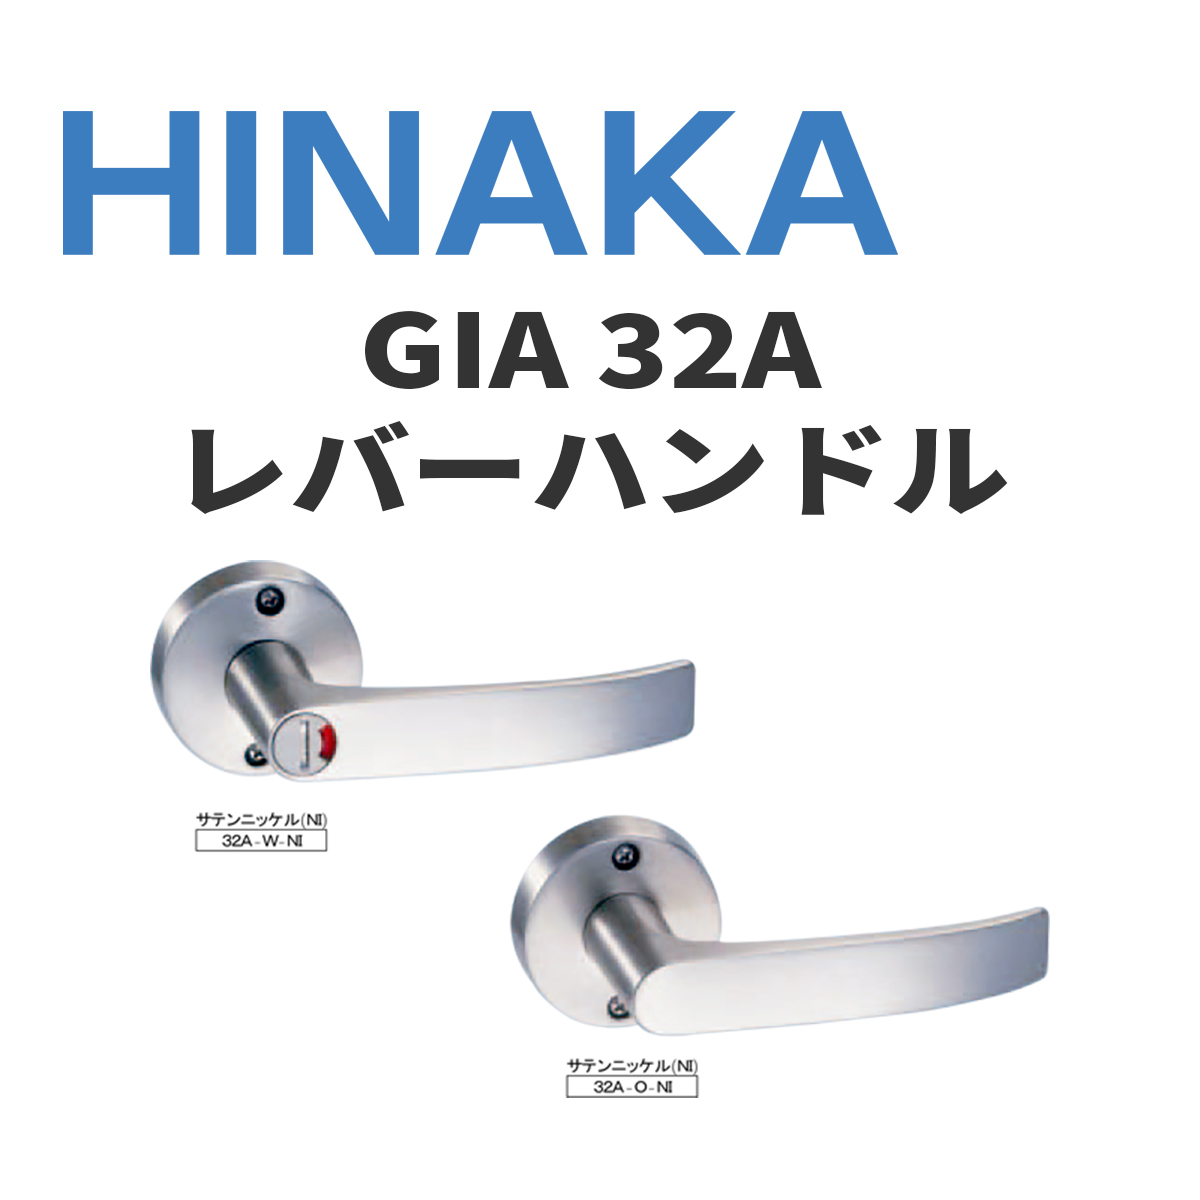 Hinaka 日中製作所 Gia レバーハンドル 32a